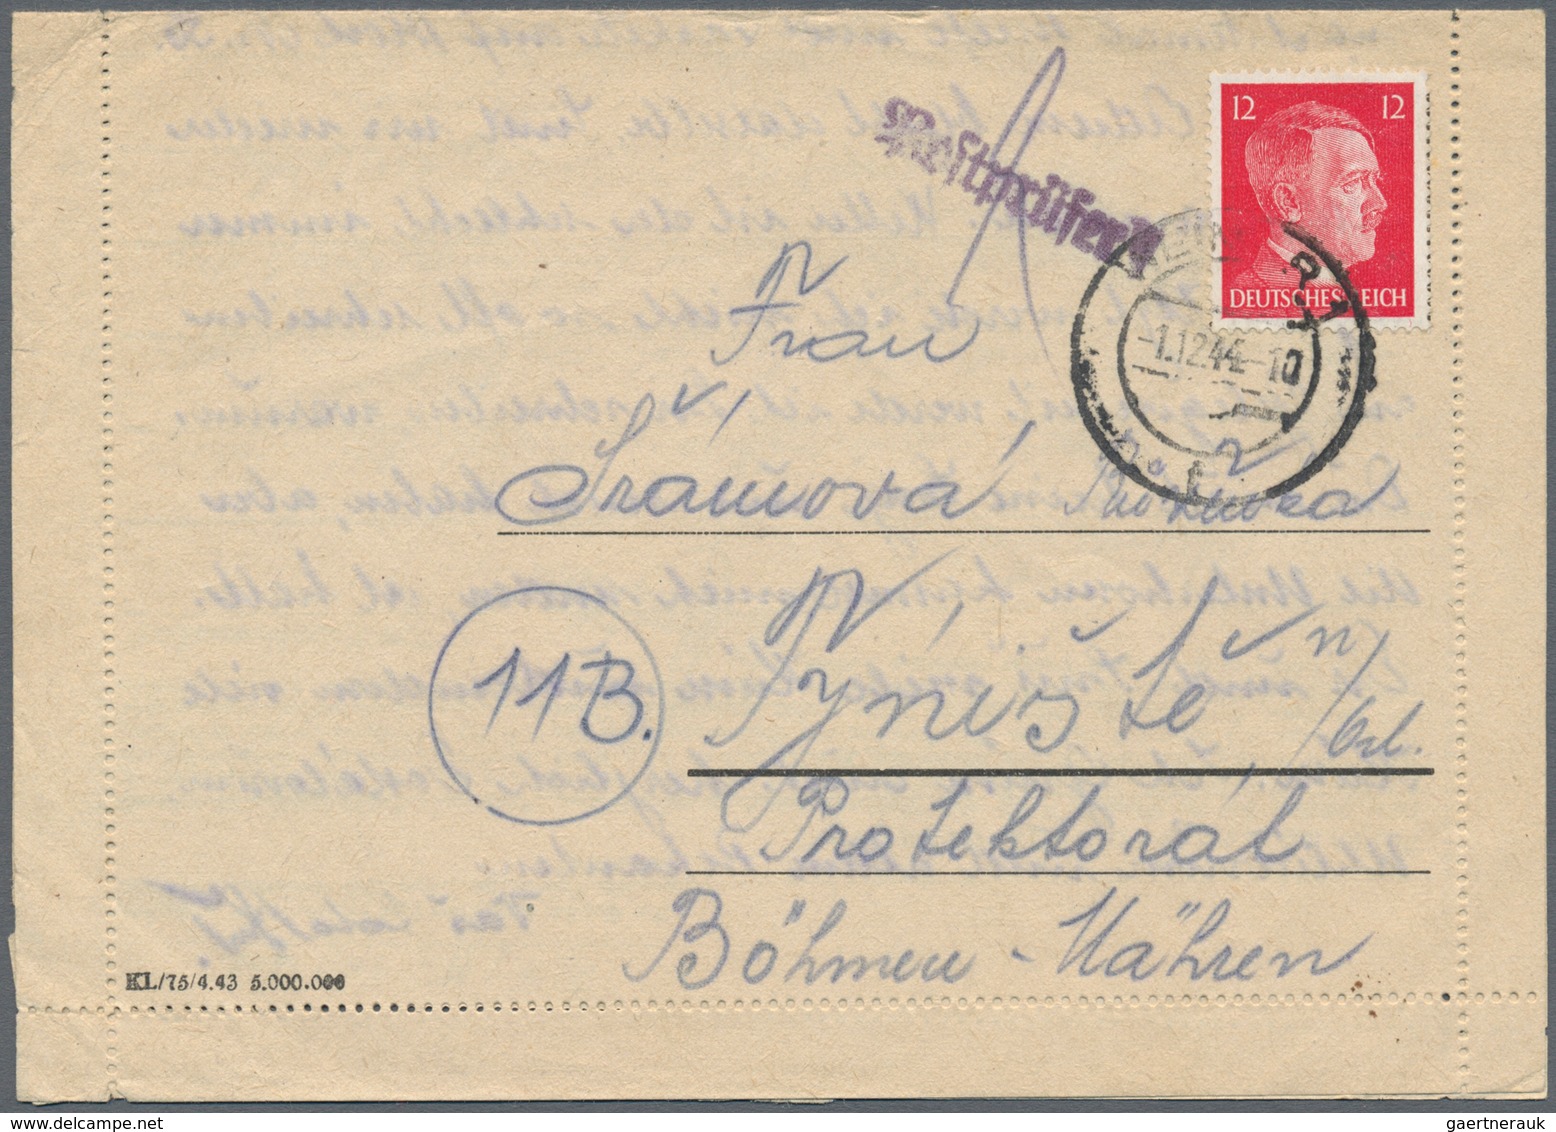 KZ-Post: 1941-1944, Sammlung mit über 80 Briefen, Belegen und Briefstücken von oder in Lager, dabei